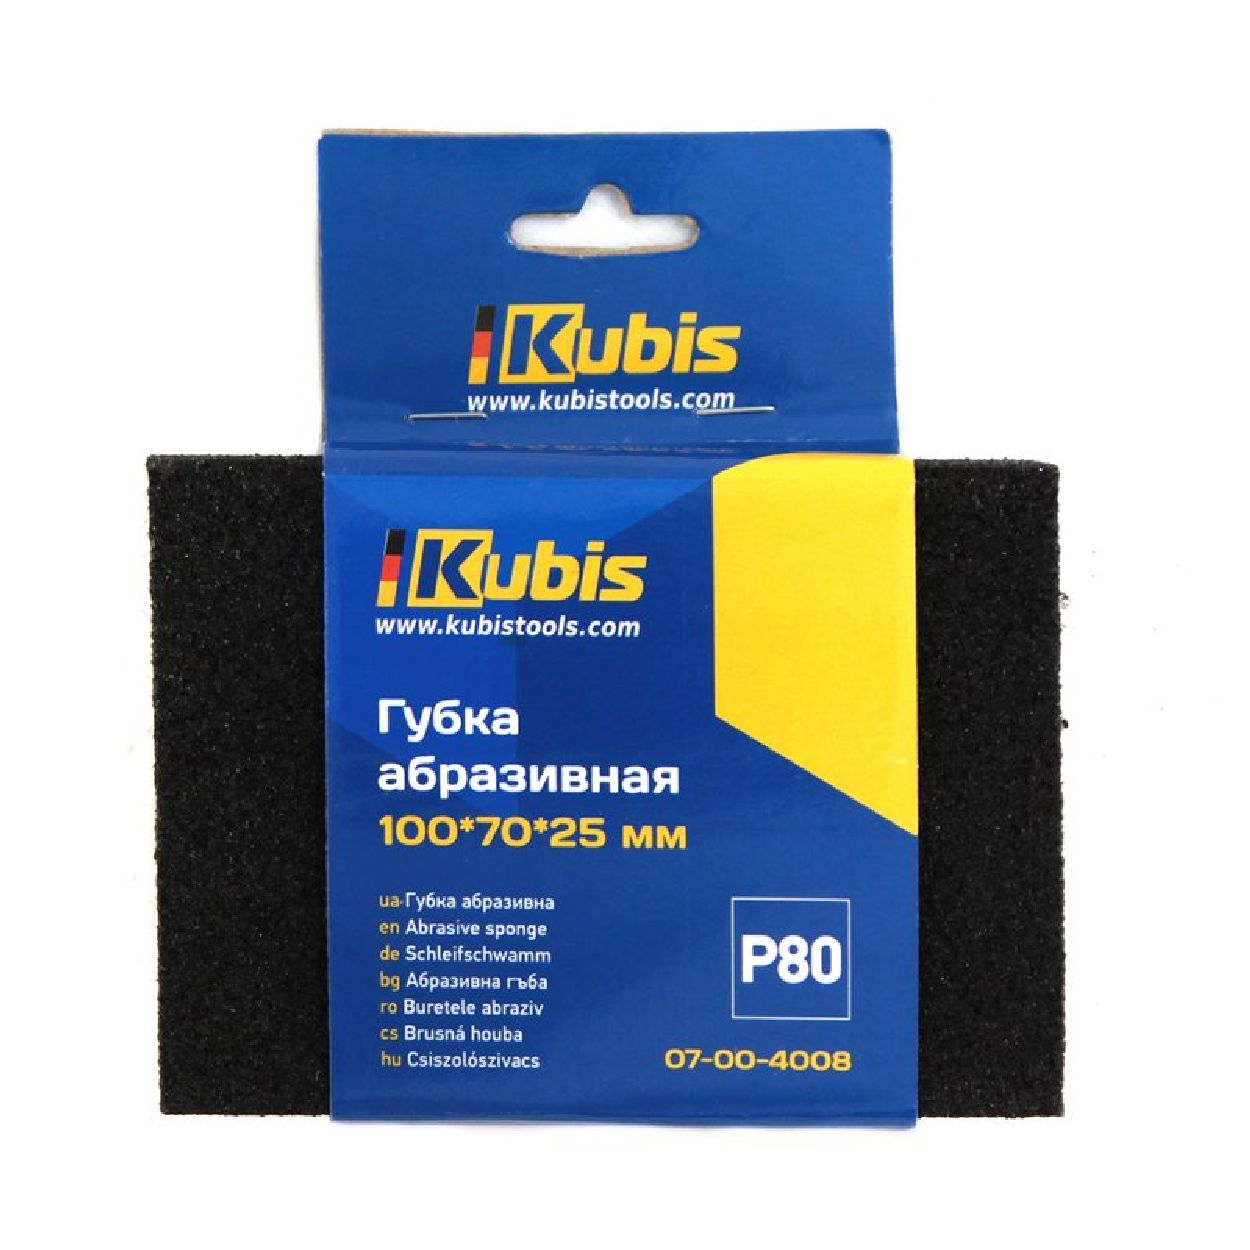 INBUSCO / KUBIS Schleifschwamm KB07-00-4008 Multifunktionswerkzeug, Transparent